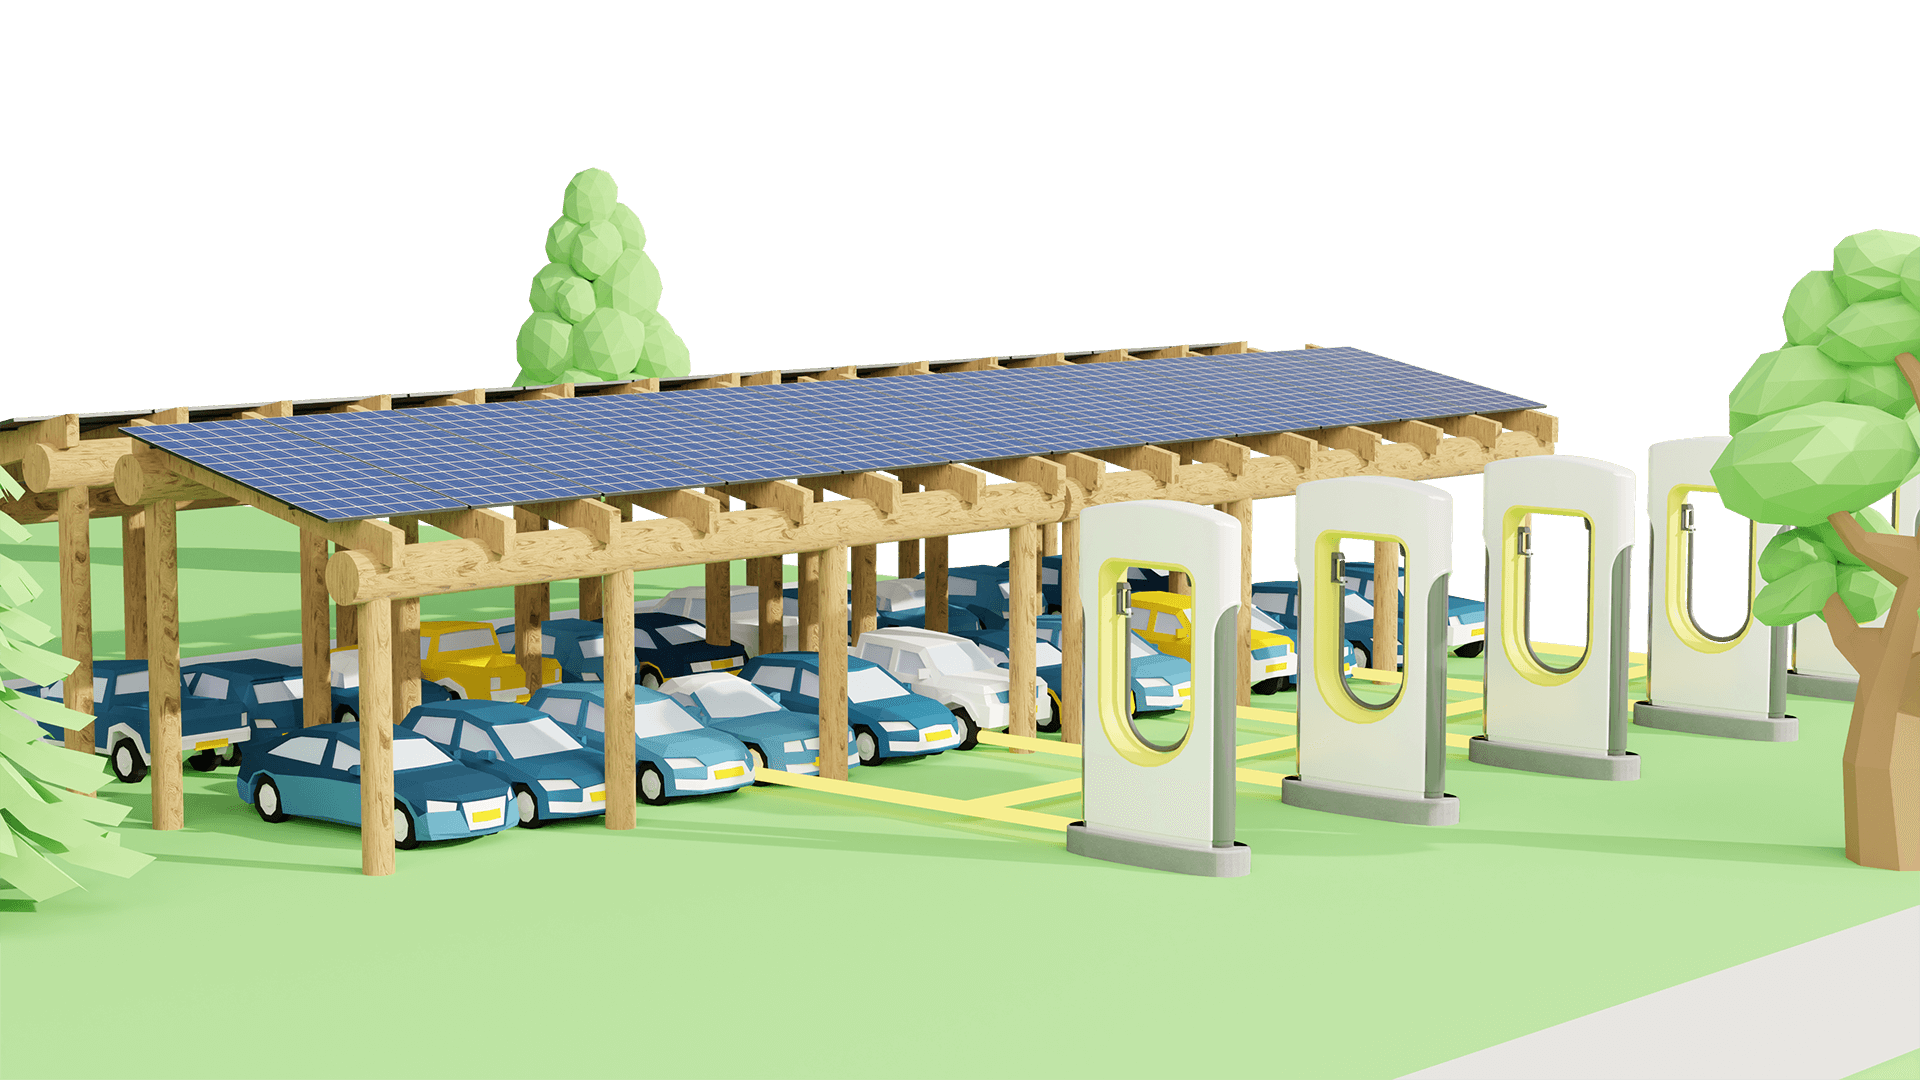 Solinoor solarcarport 3D model close-up